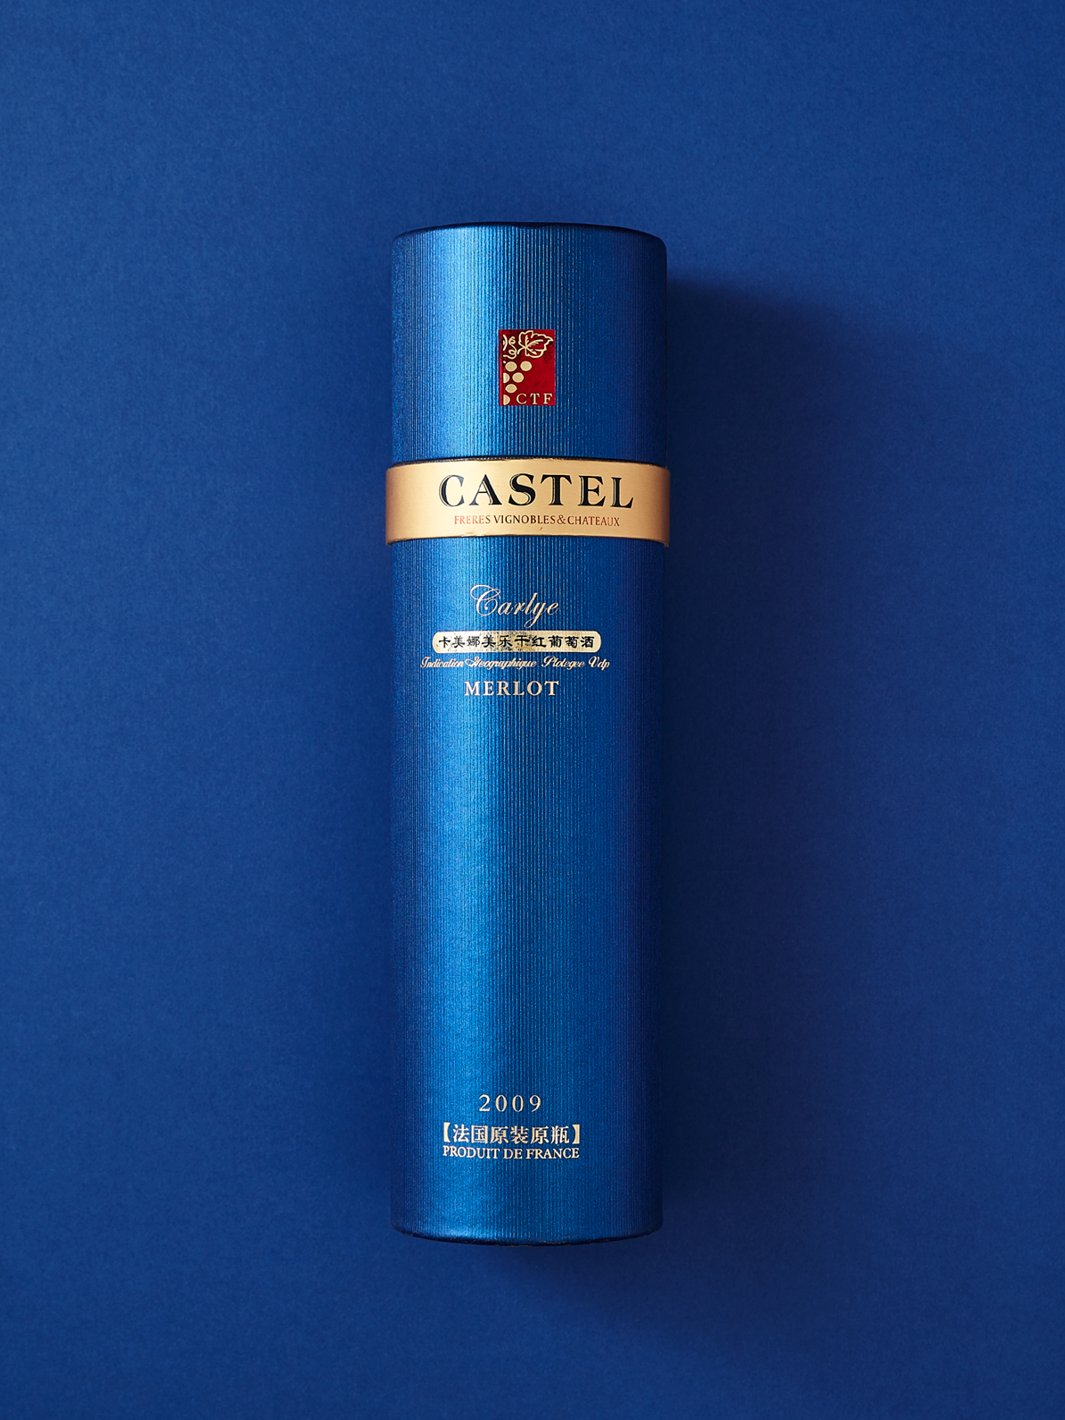 Blaue Pappröhrenverpackung für Castel-Getränke.